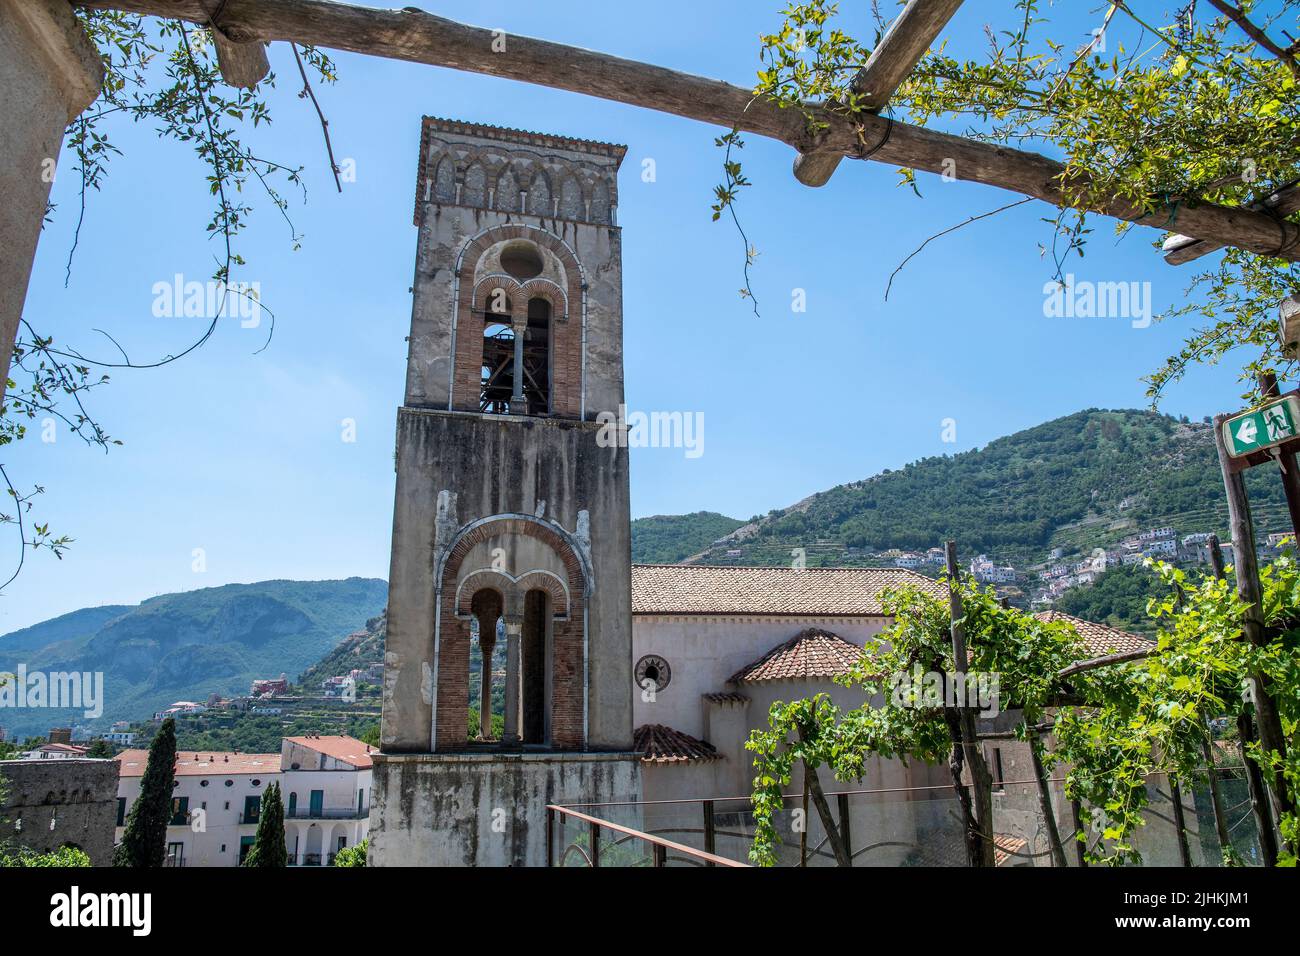 Der Glockenturm der Kathedrale ragt in der wunderschönen Stadt Ravello an der Amalfiküste, Italien, in den Himmel. Stockfoto